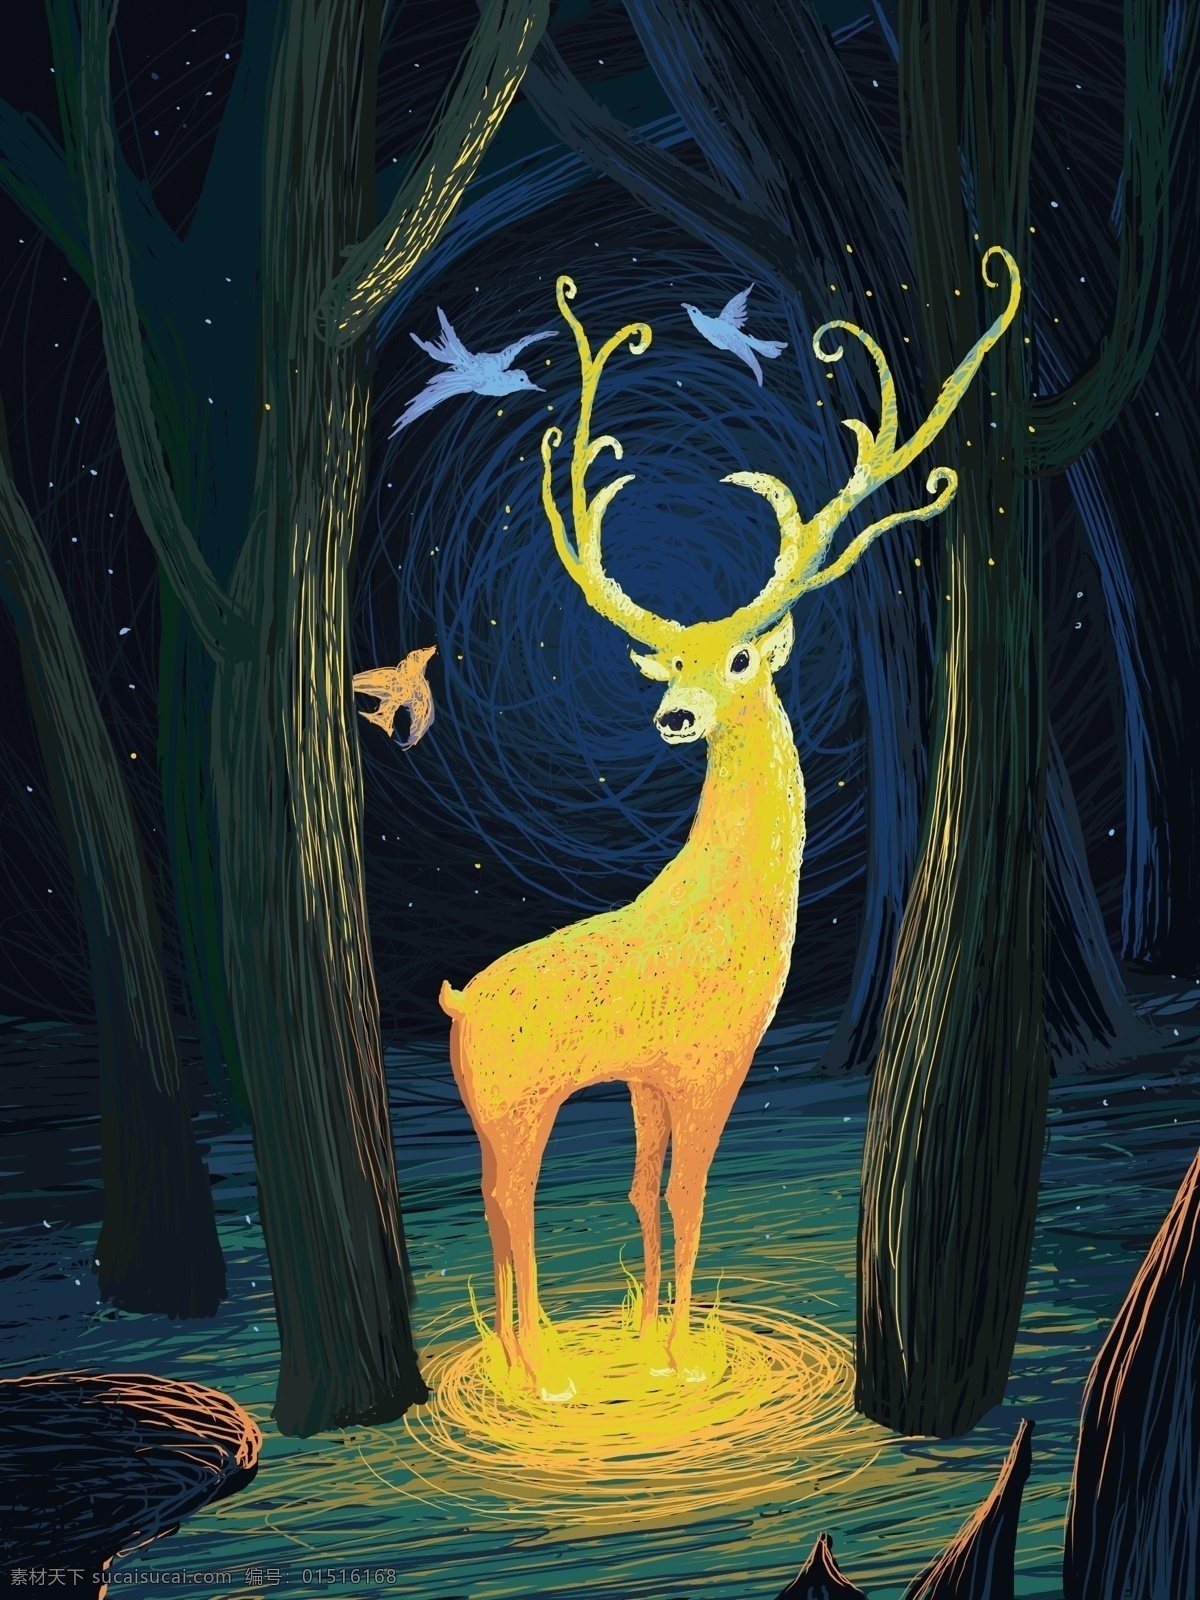 森林 鹿 线圈 治愈 系 精灵 插画 壁纸 插图 唯美 创意 蓝光 森林与鹿 树林 线圈画 治愈系 深林 手绘 原创